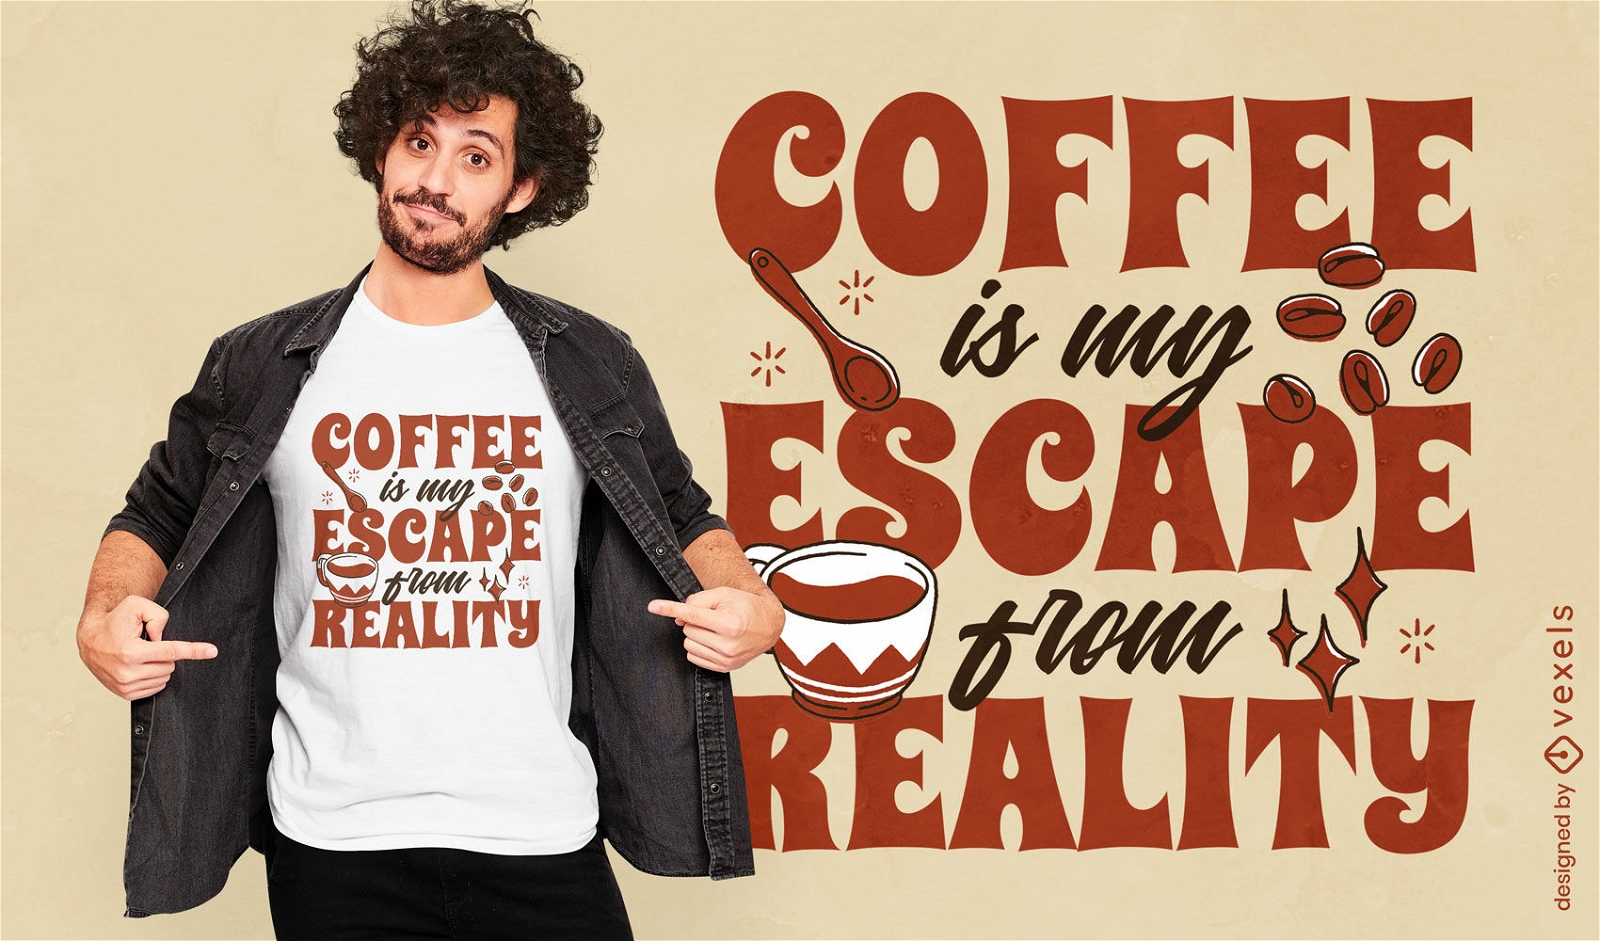 Caf? escapar do design de t-shirt de cita??o de realidade